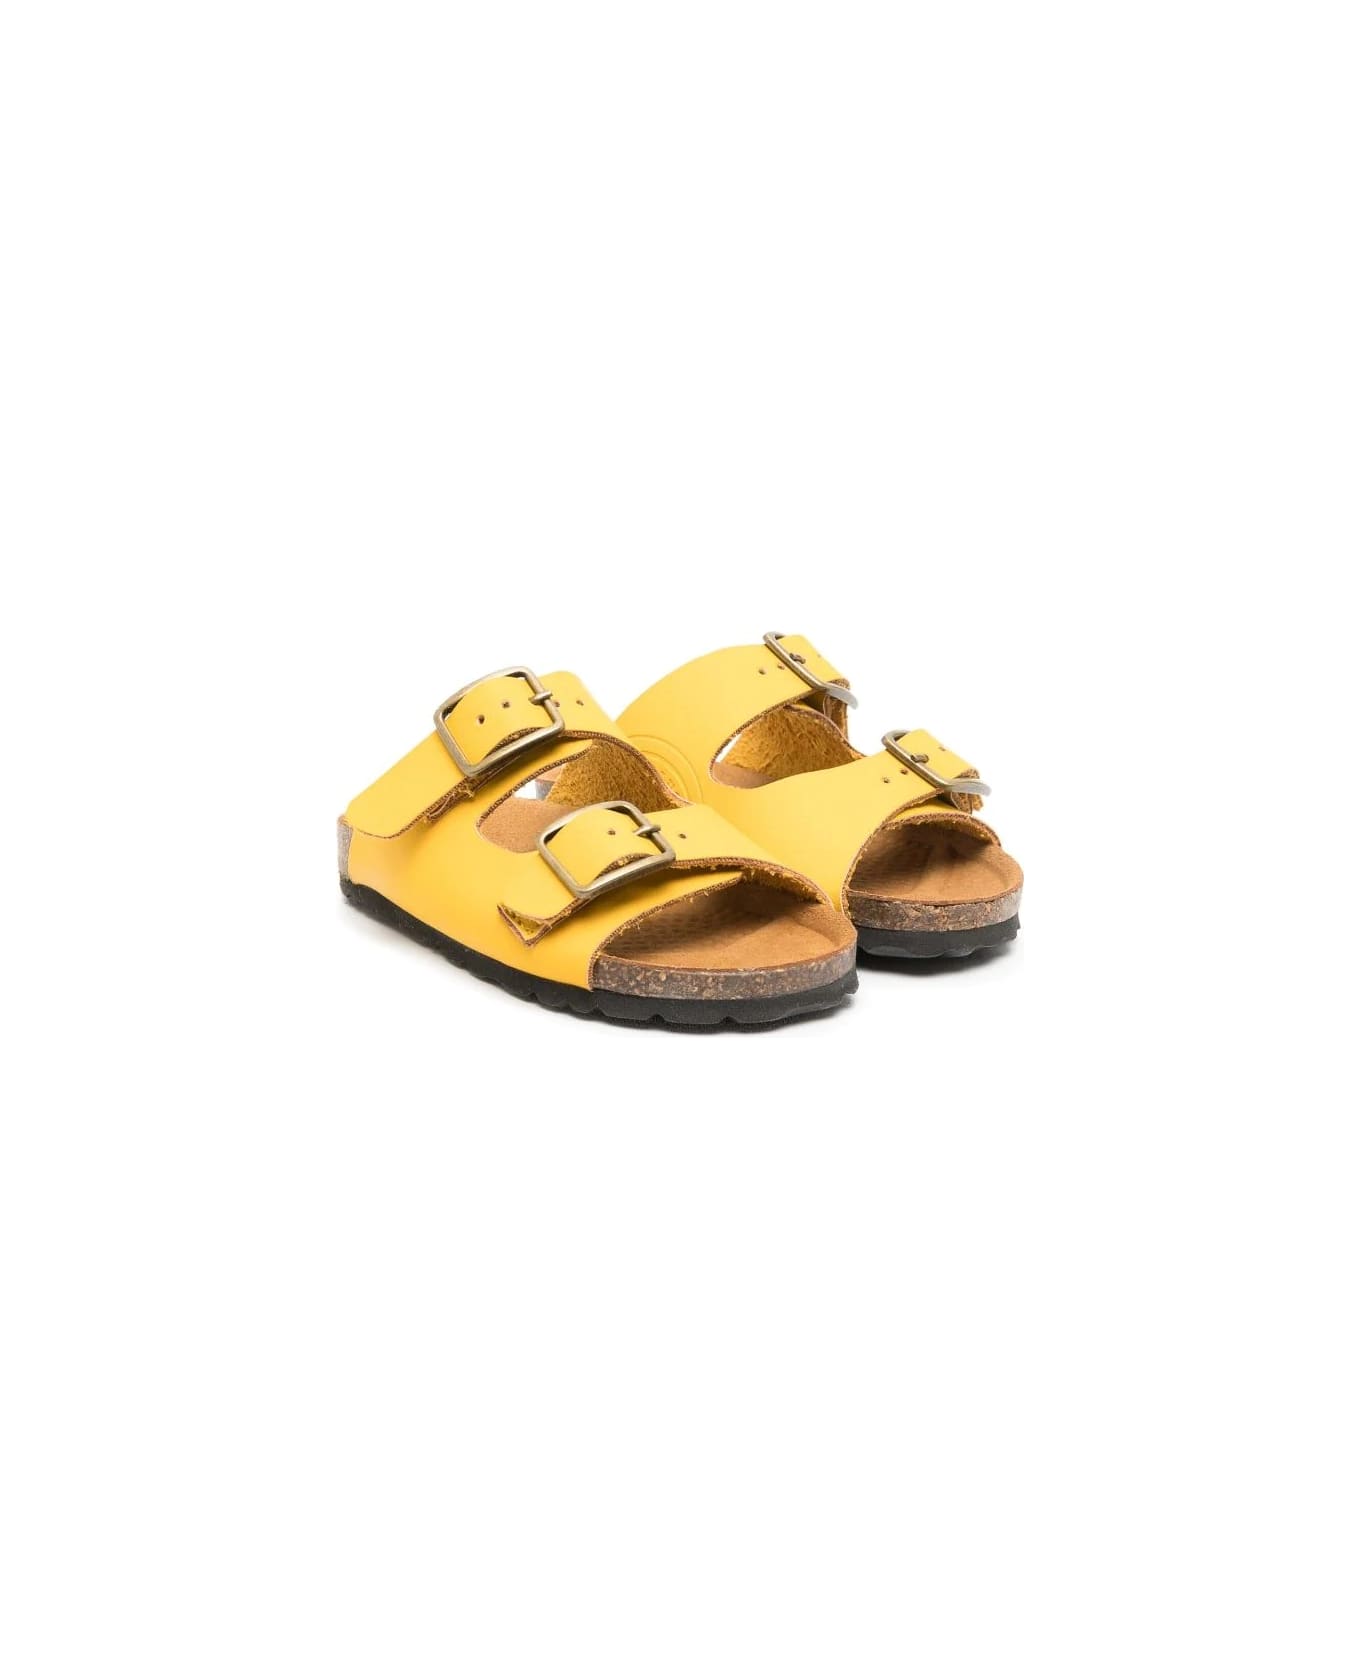 Gallucci Yellow Sandals - Yellow シューズ